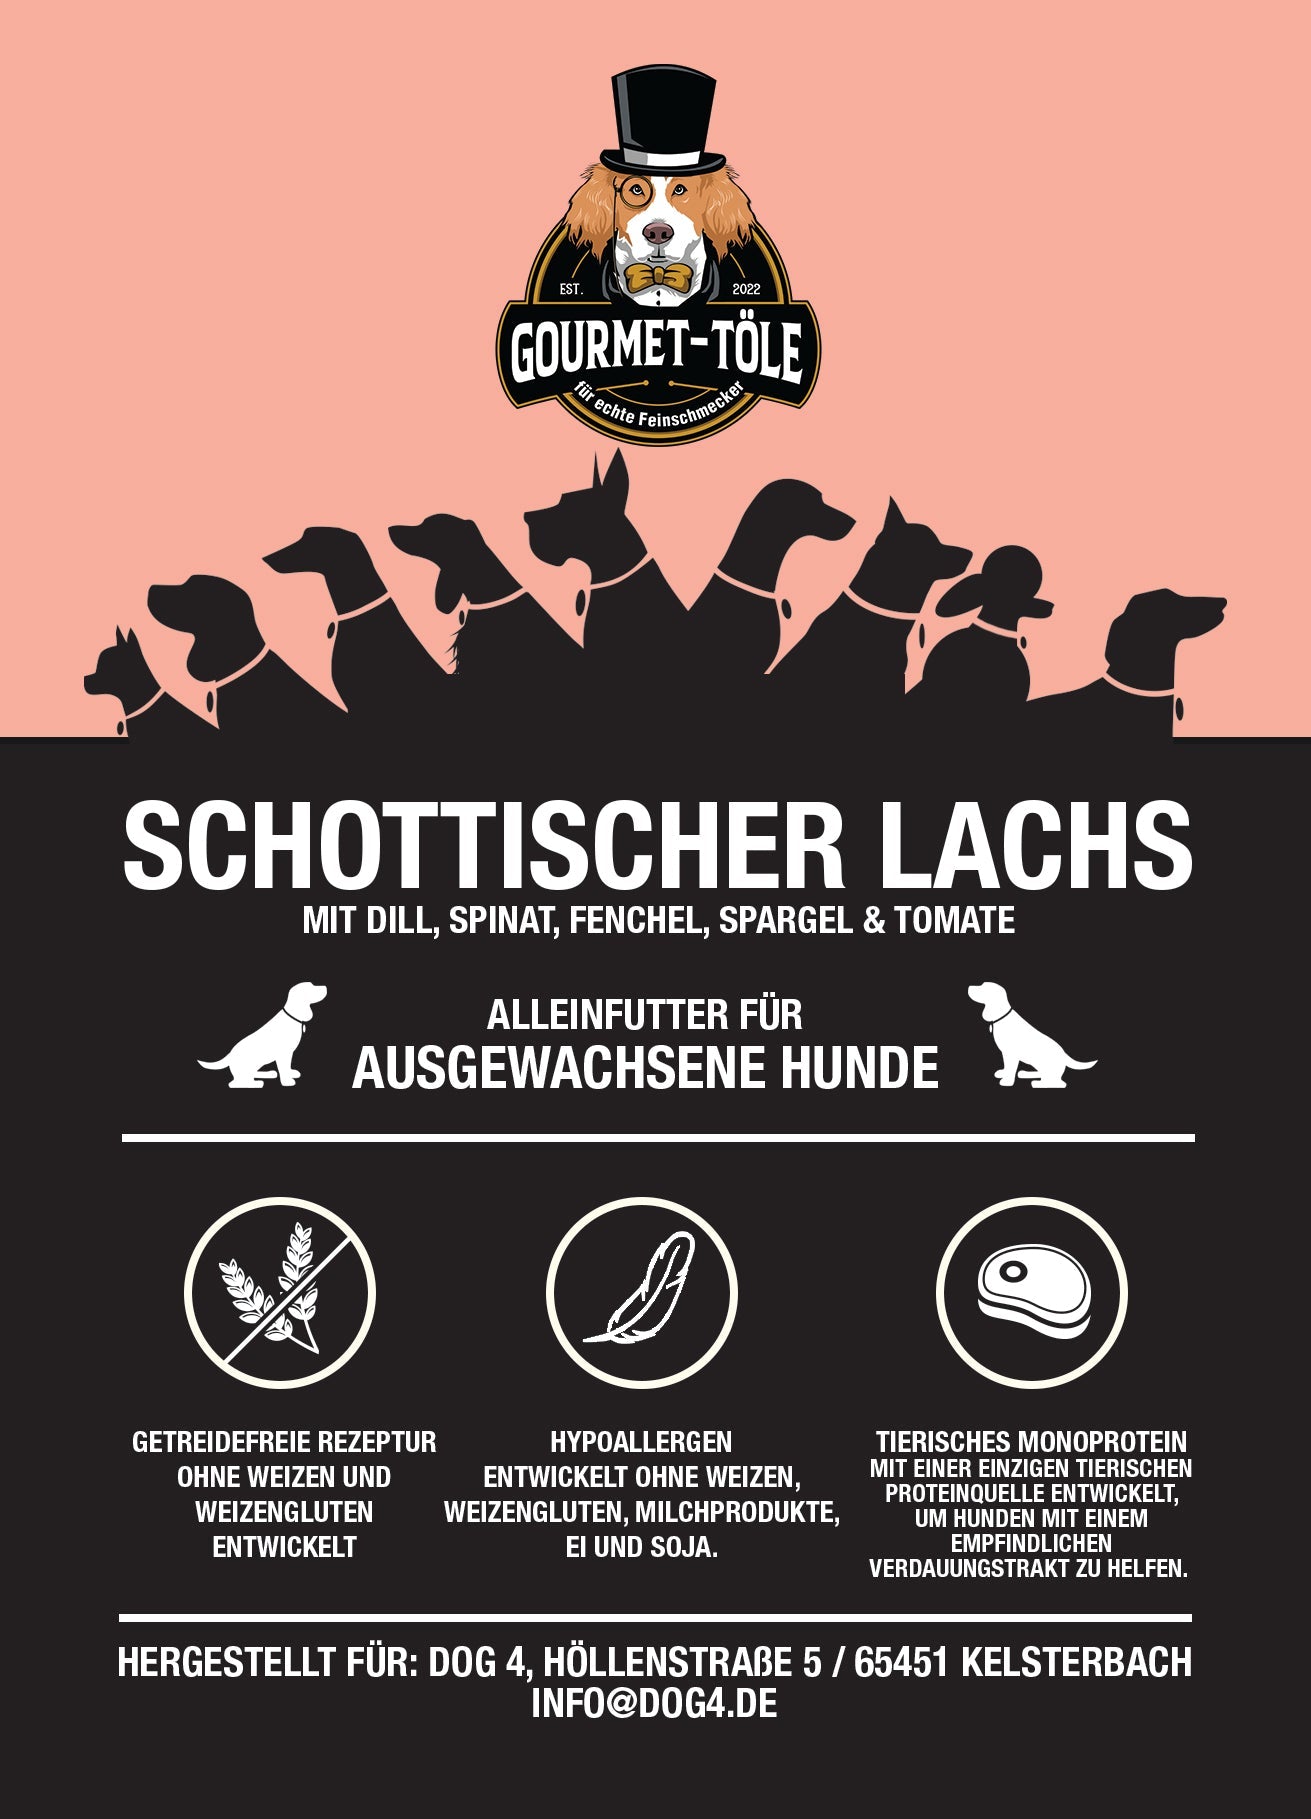 Gourmet-Töle - Schottischer Lachs mit Dill, Spinat, Fenchel, Spargel & Tomate 12kg